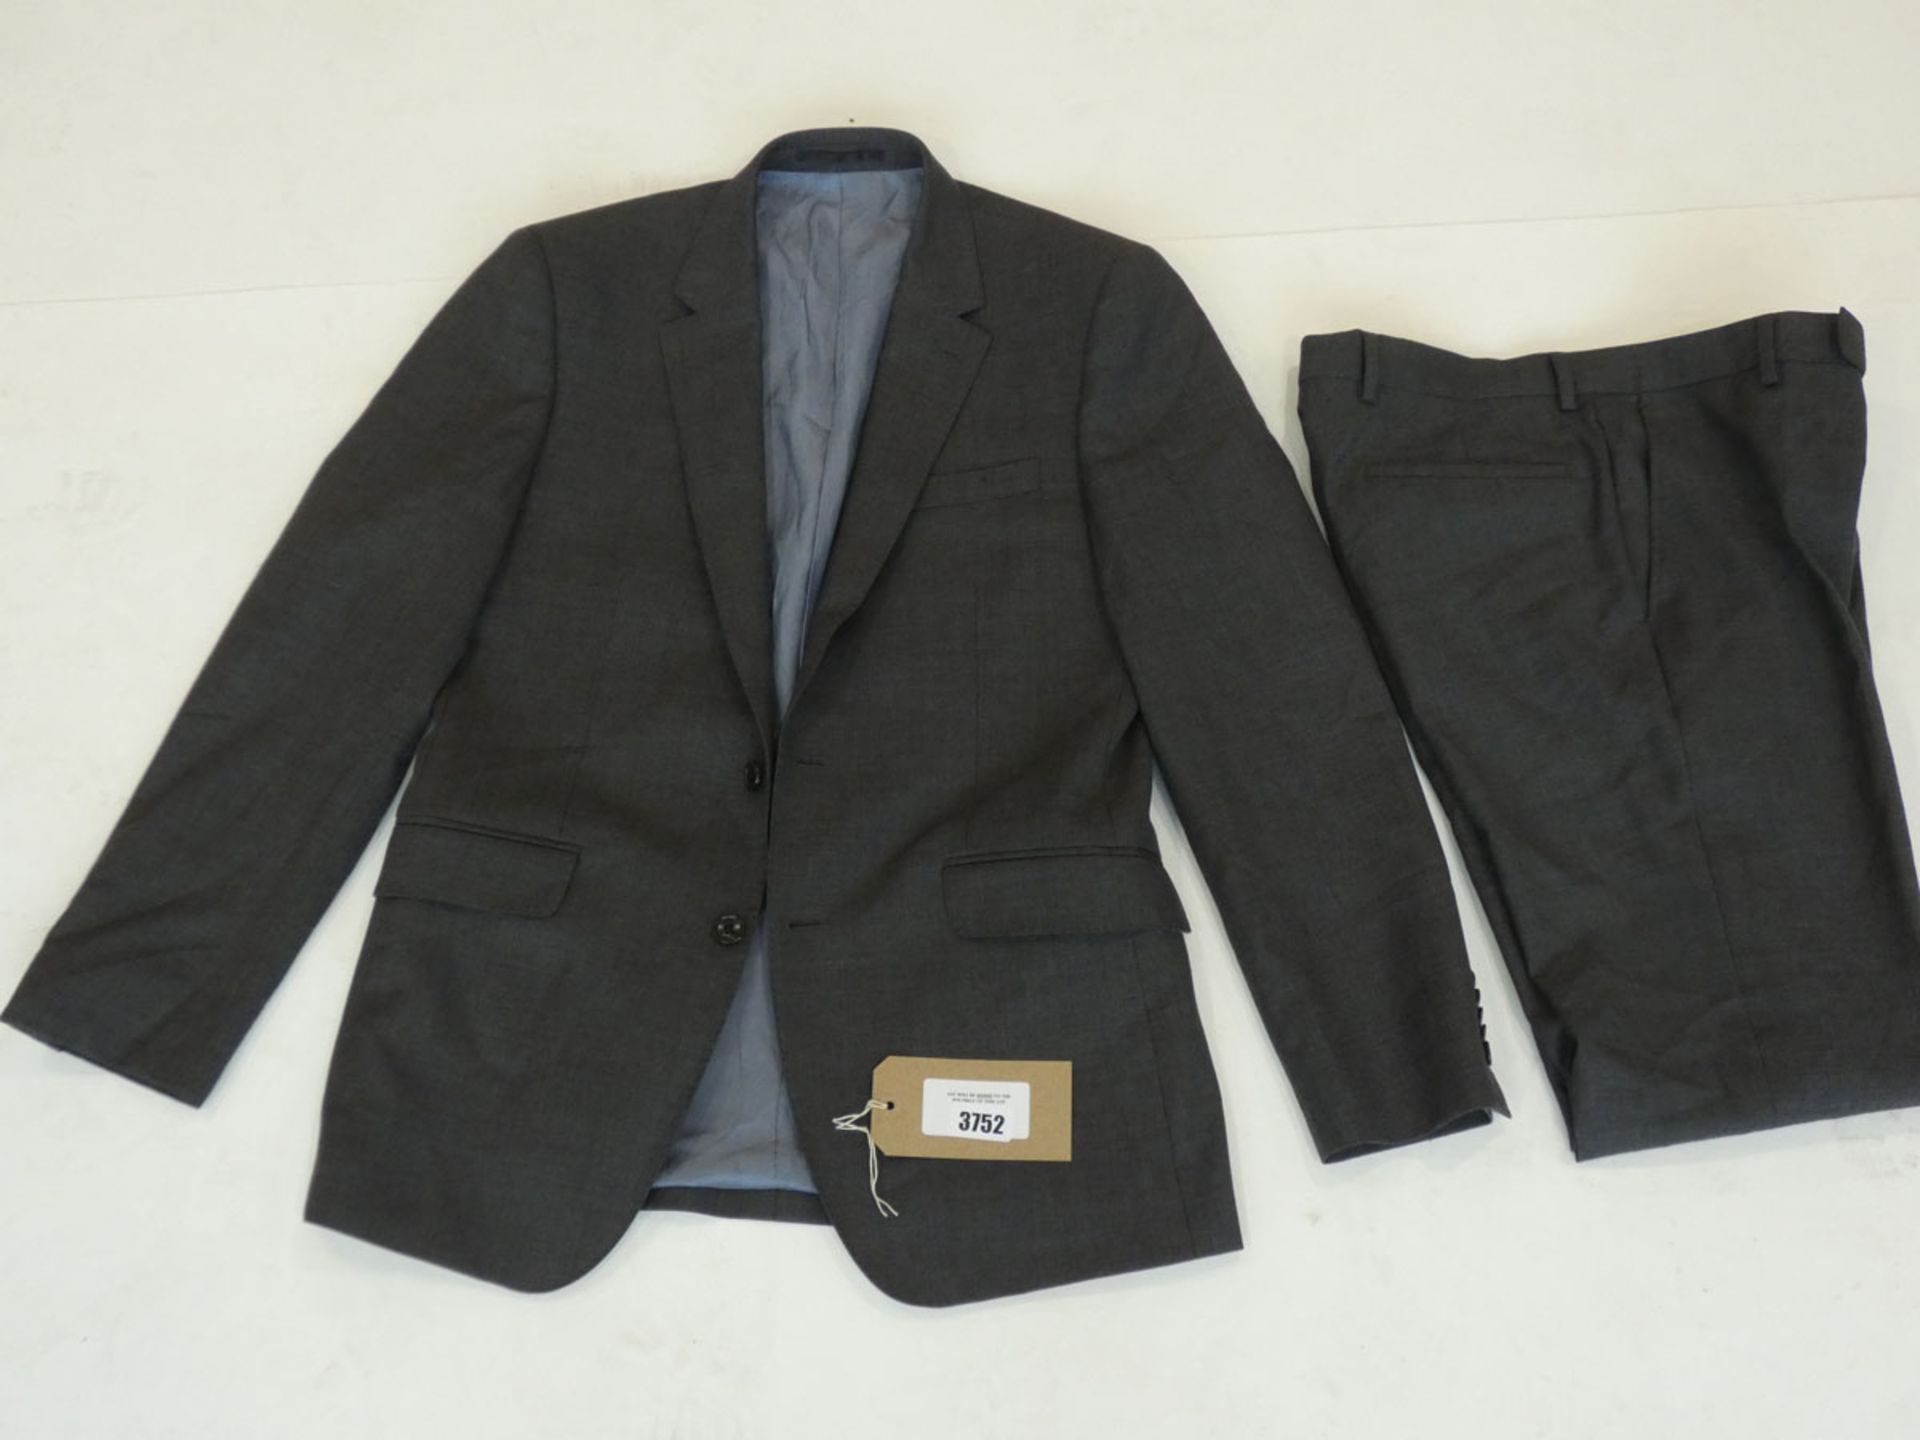 T.M.Lewin mens grey suit set sizes Jacket 38R, Trousers 30R